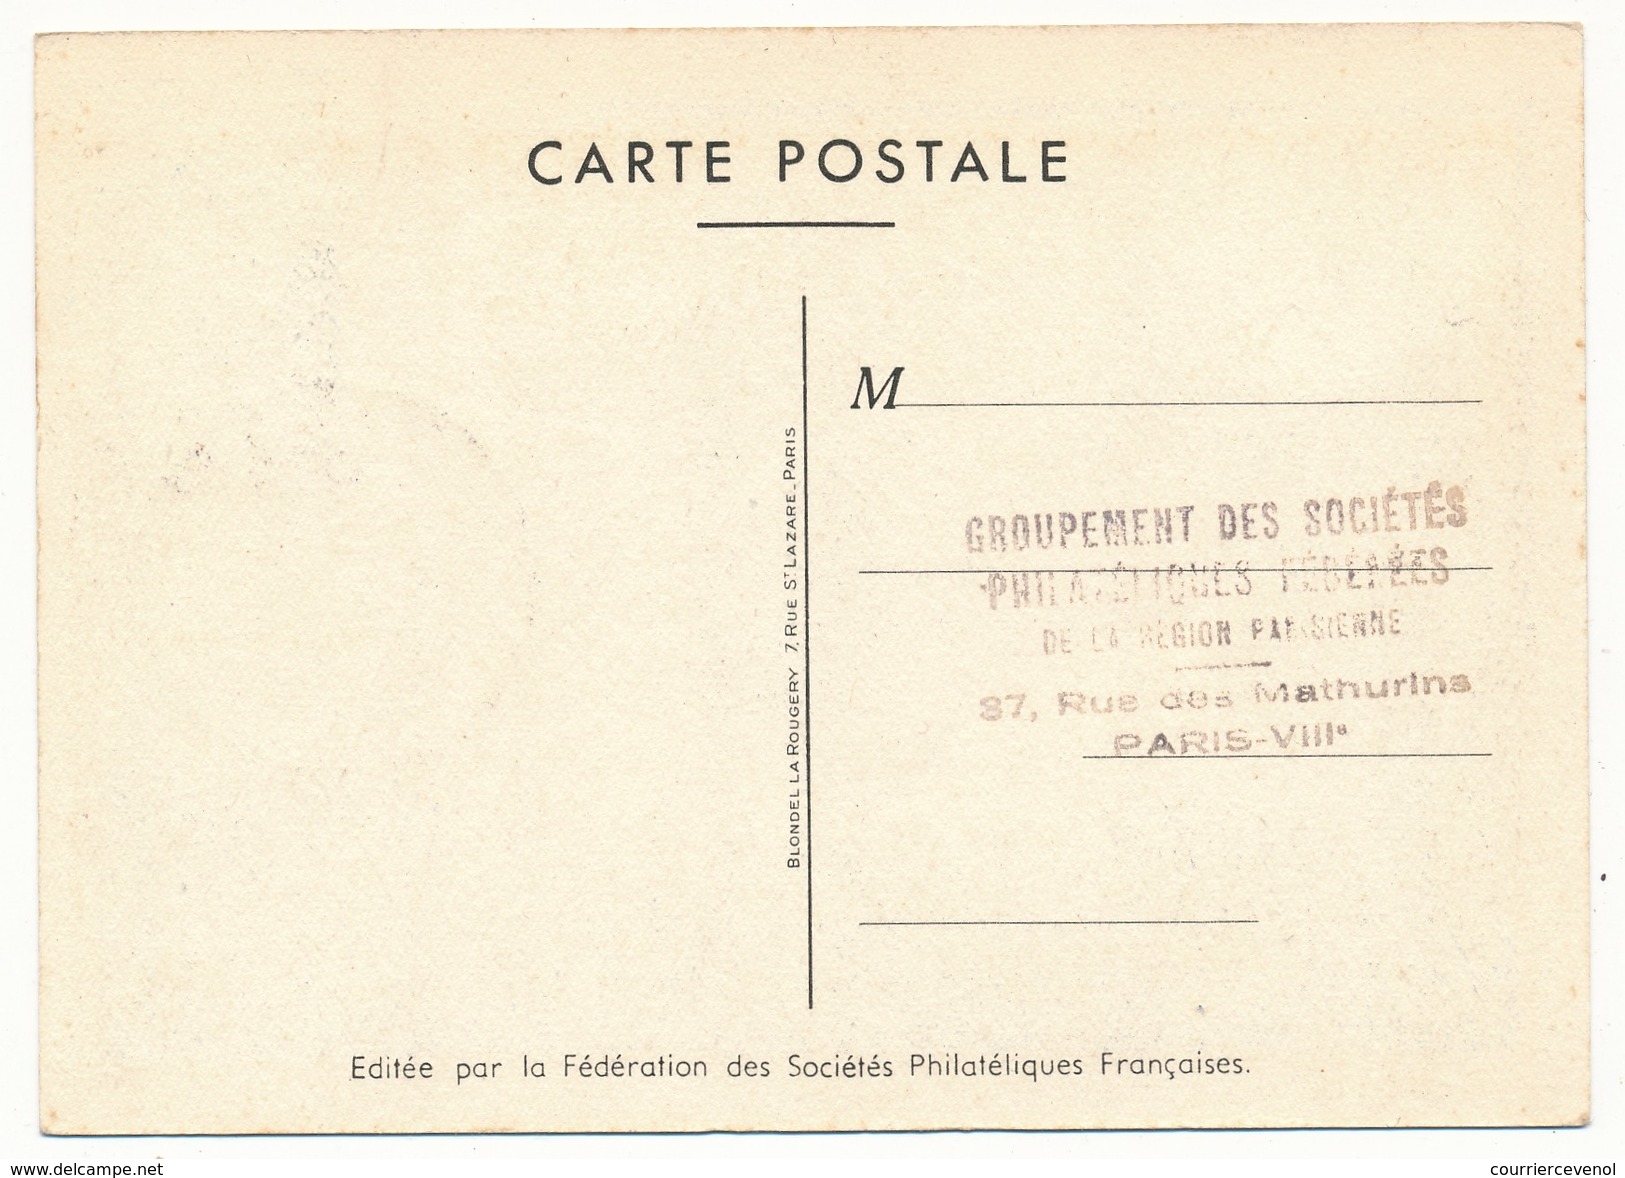 FRANCE - Carte Postale Dessin De Raoul Serres - Journée Du Timbre 1950 PARIS - Facteur Rural - Stamp's Day